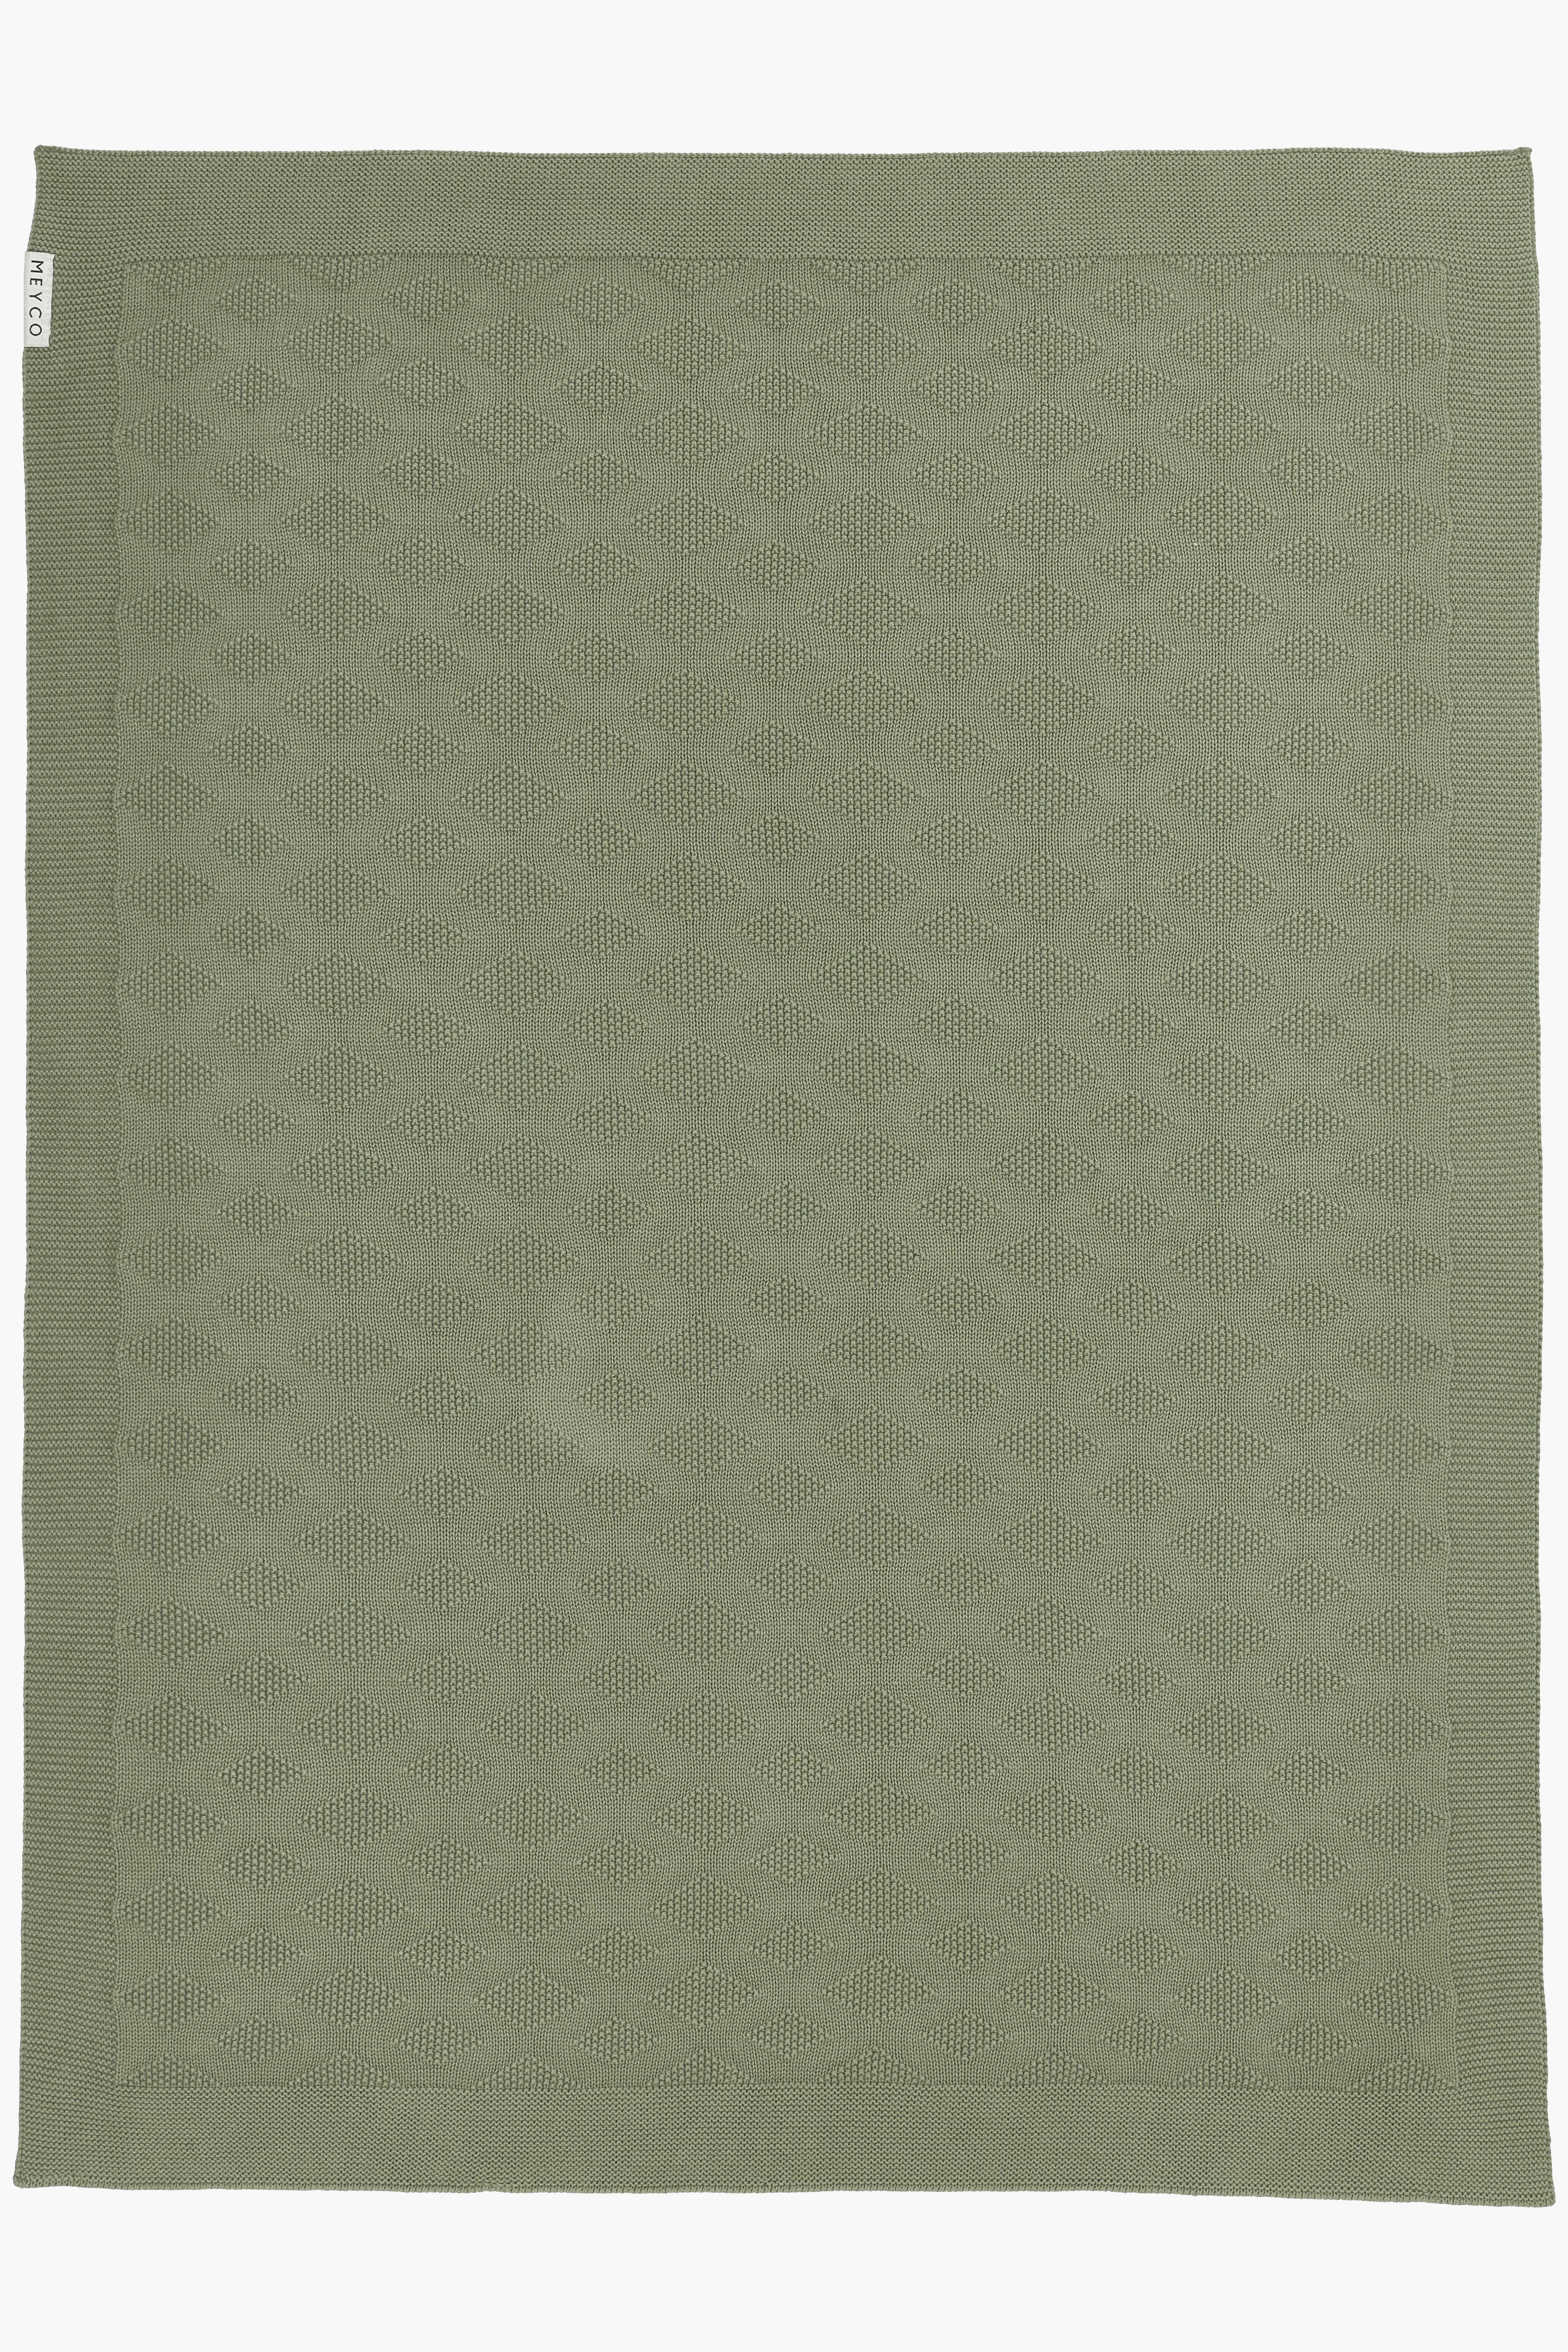 Ledikant deken biologisch Diamond - forest green - 100x150cm